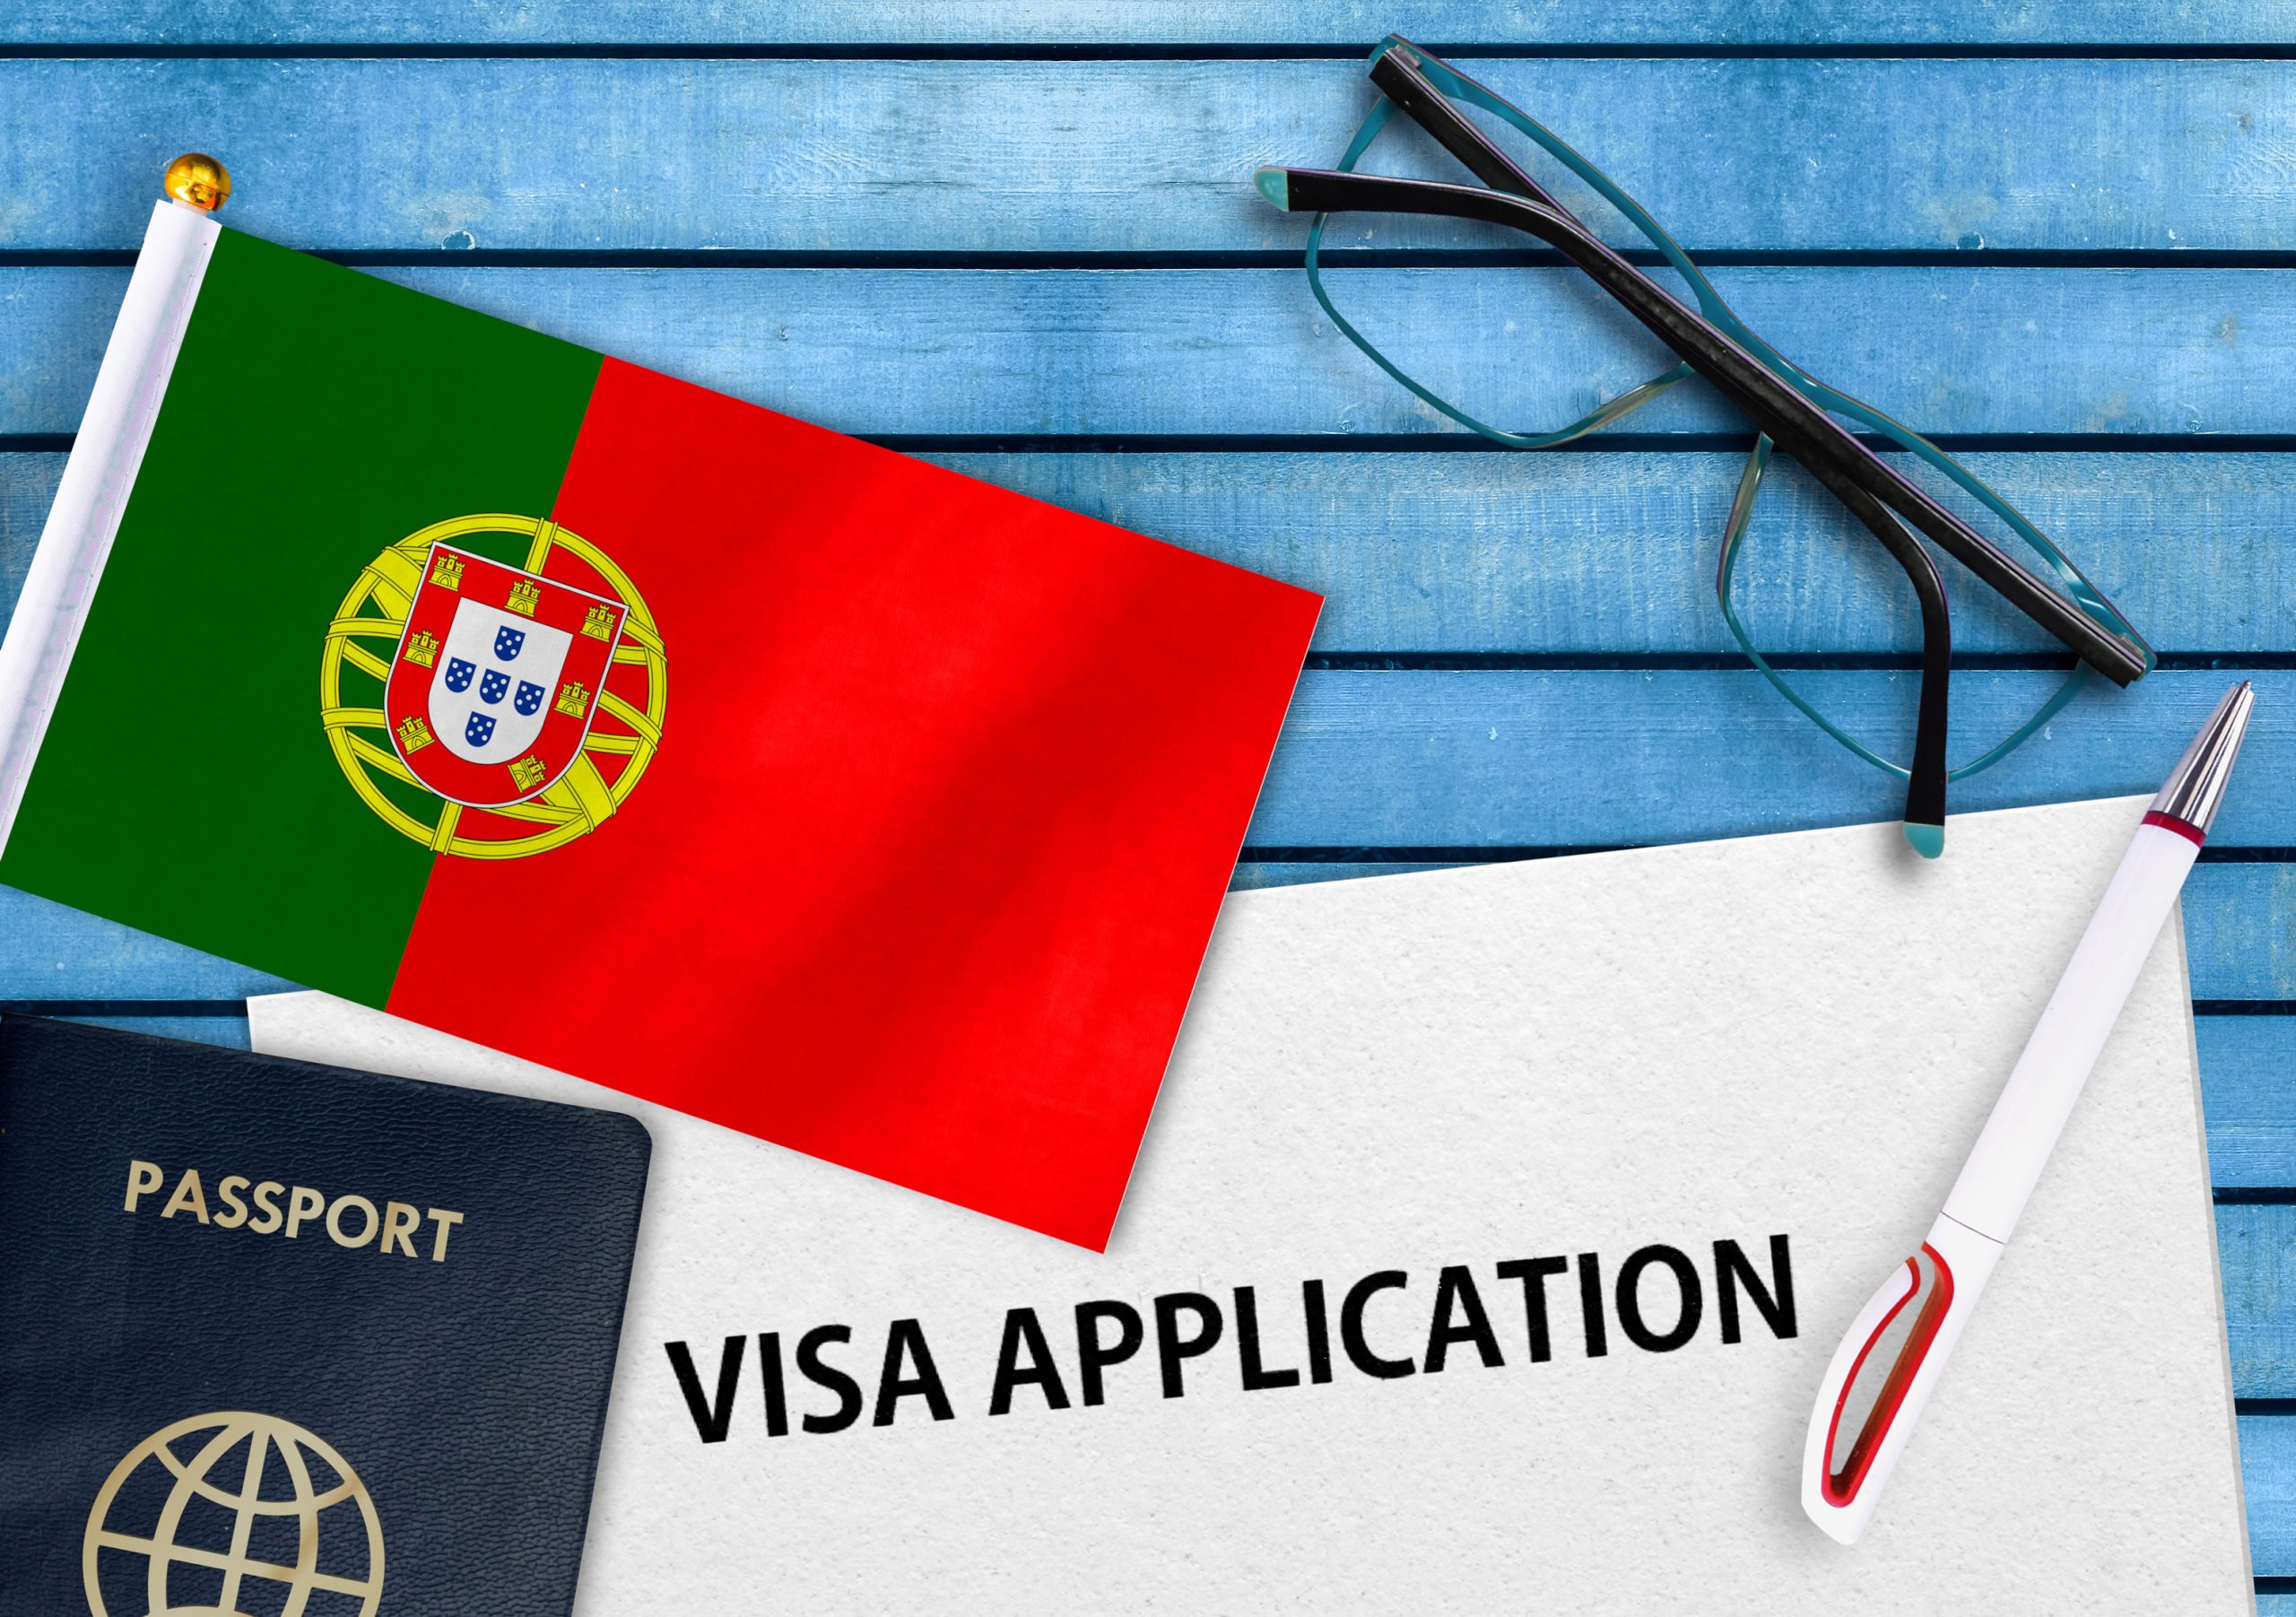 اقامت کاری پرتغال و وضعیت کار در پرتغال ۲۰۲۲ چگونه است؟